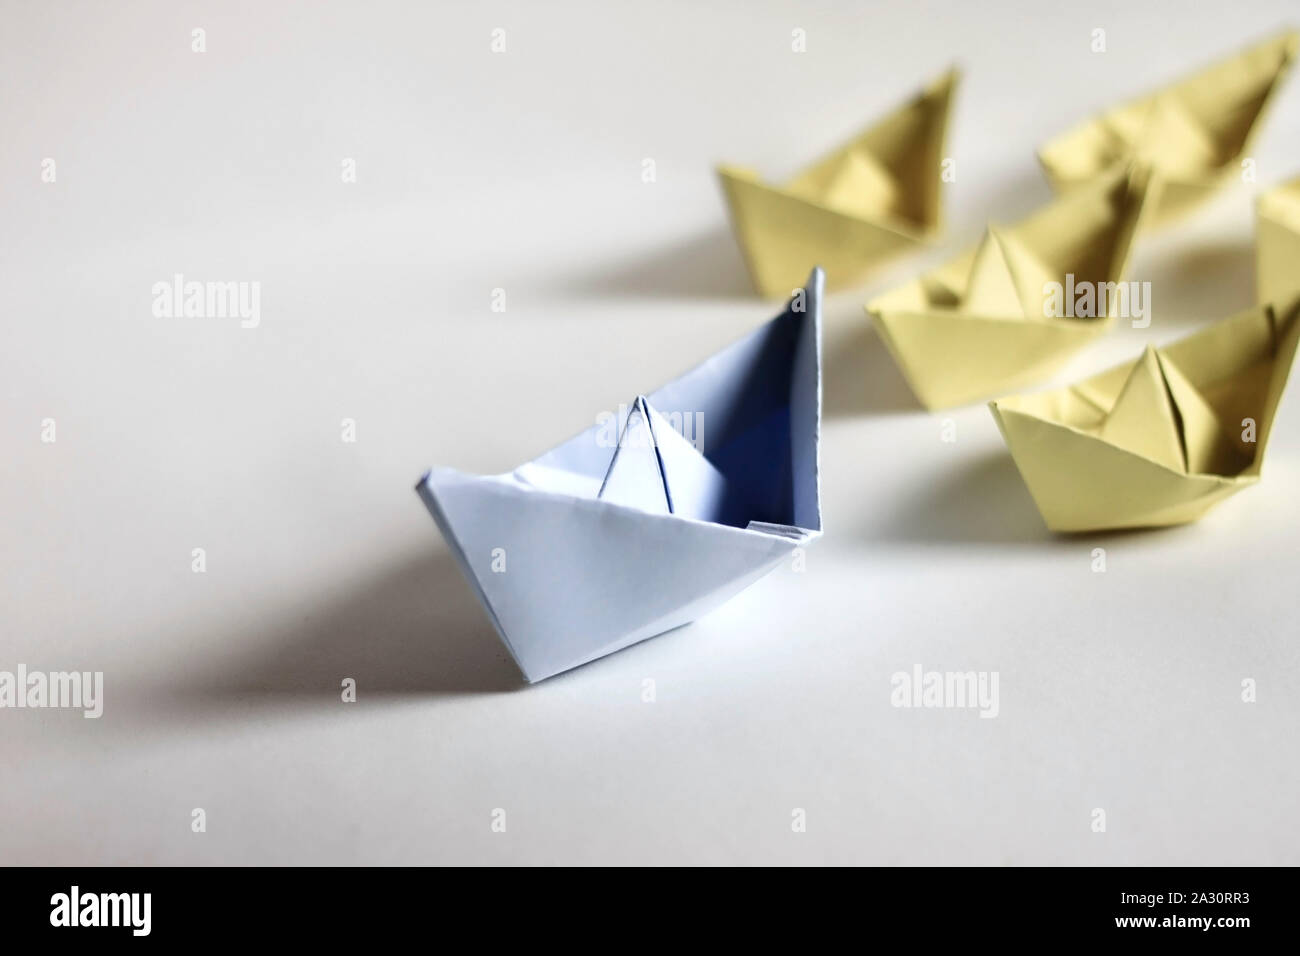 Concept de leadership. Bateaux en papier sur un fond blanc. Leader avant d'autres créations en papier, et l'origami. Banque D'Images